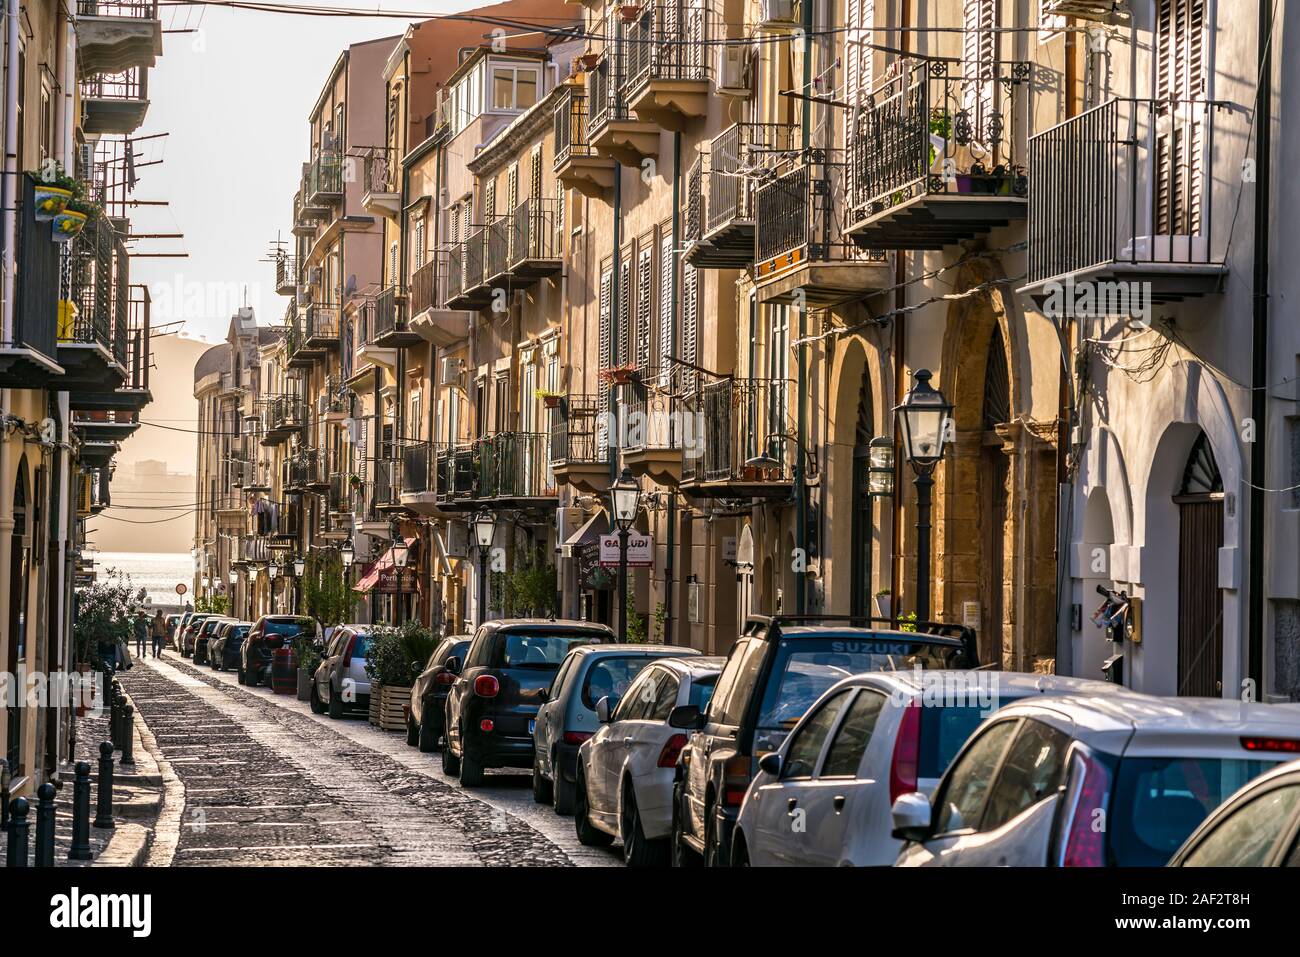 Straße in der historischen Altstadt von Cefalu, Sizilien, Italien, Europa | Straße im historischen Zentrum von Cefalu, Sizilien, Italien, Europa Stockfoto